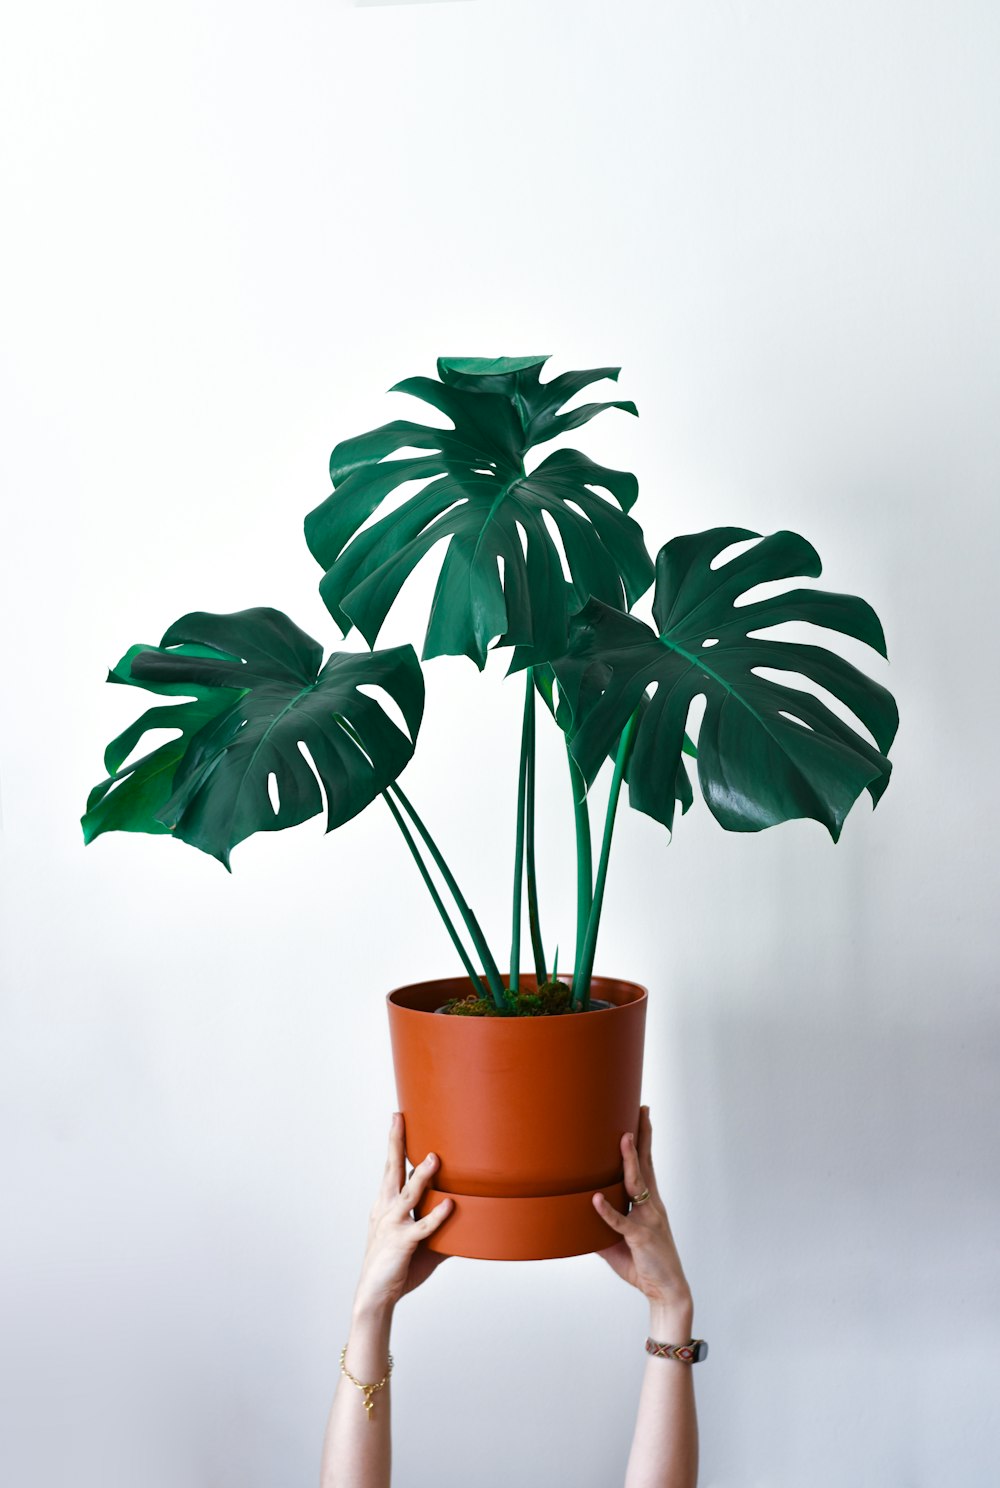 une personne tenant une plante en pot avec de grandes feuilles vertes